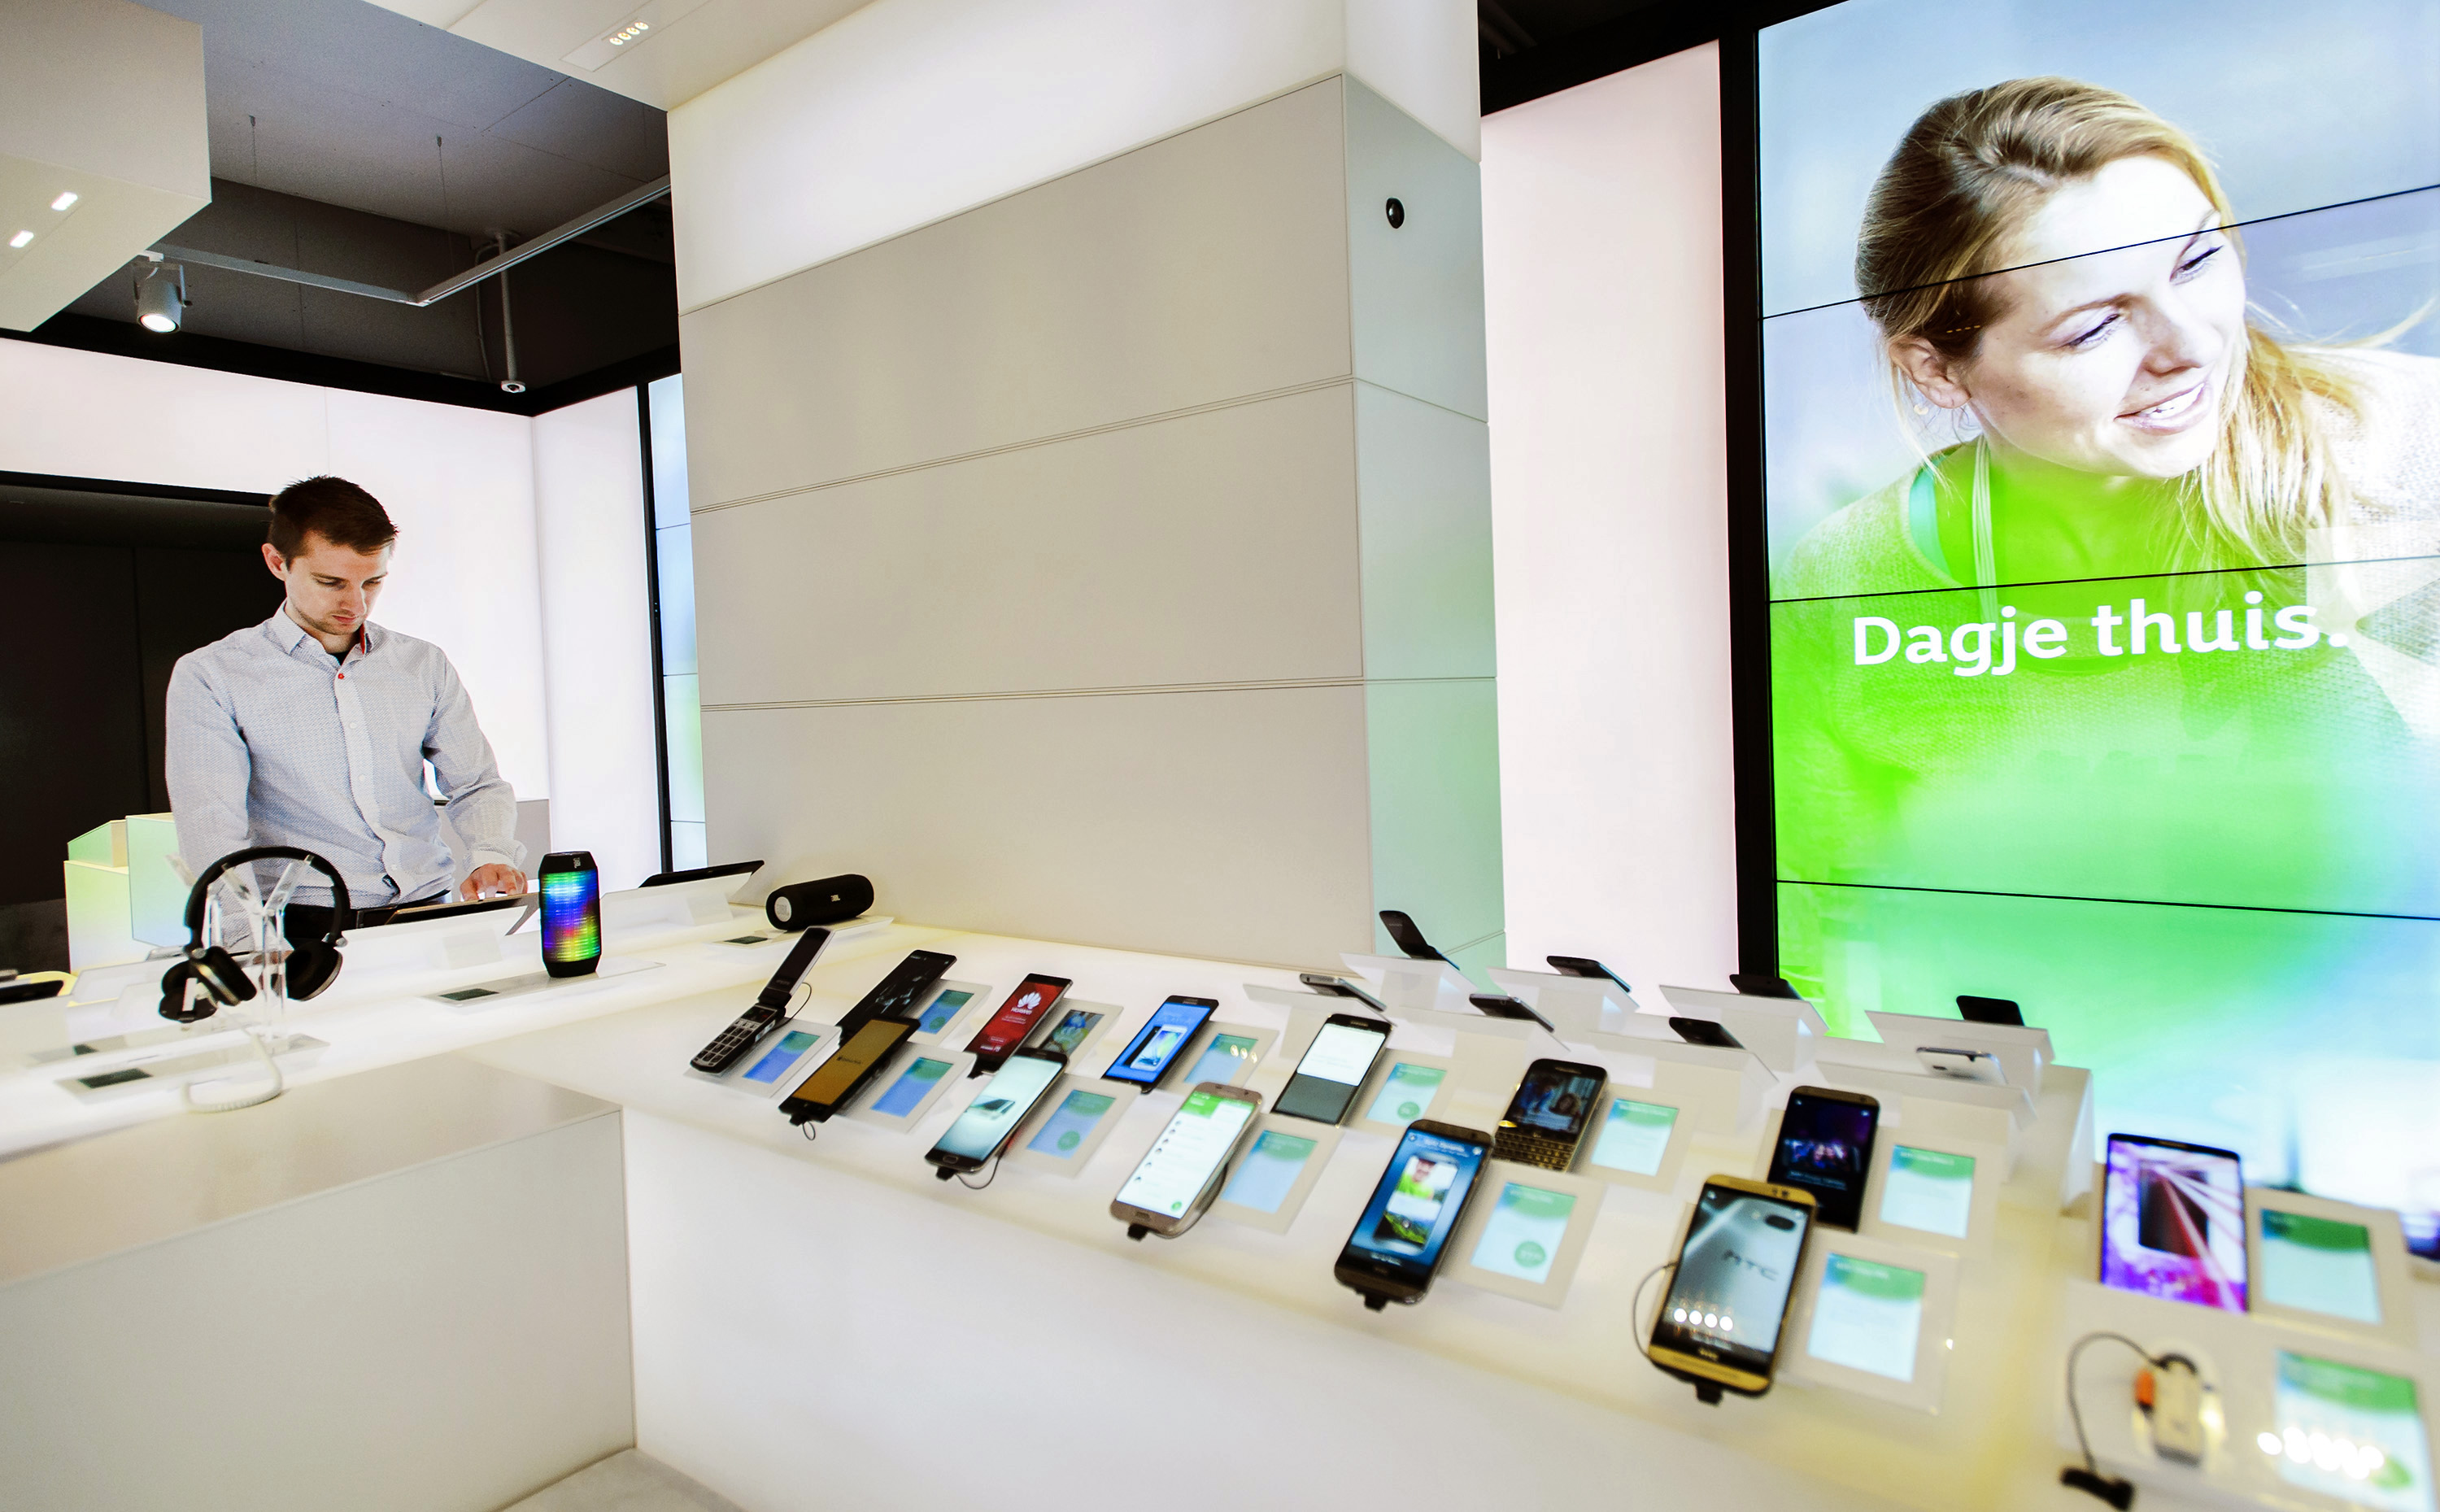 2015-07-29 10:24:10 HAARLEM - Mobiele telefoons in een winkel van KPN. ANP REMKO DE WAAL